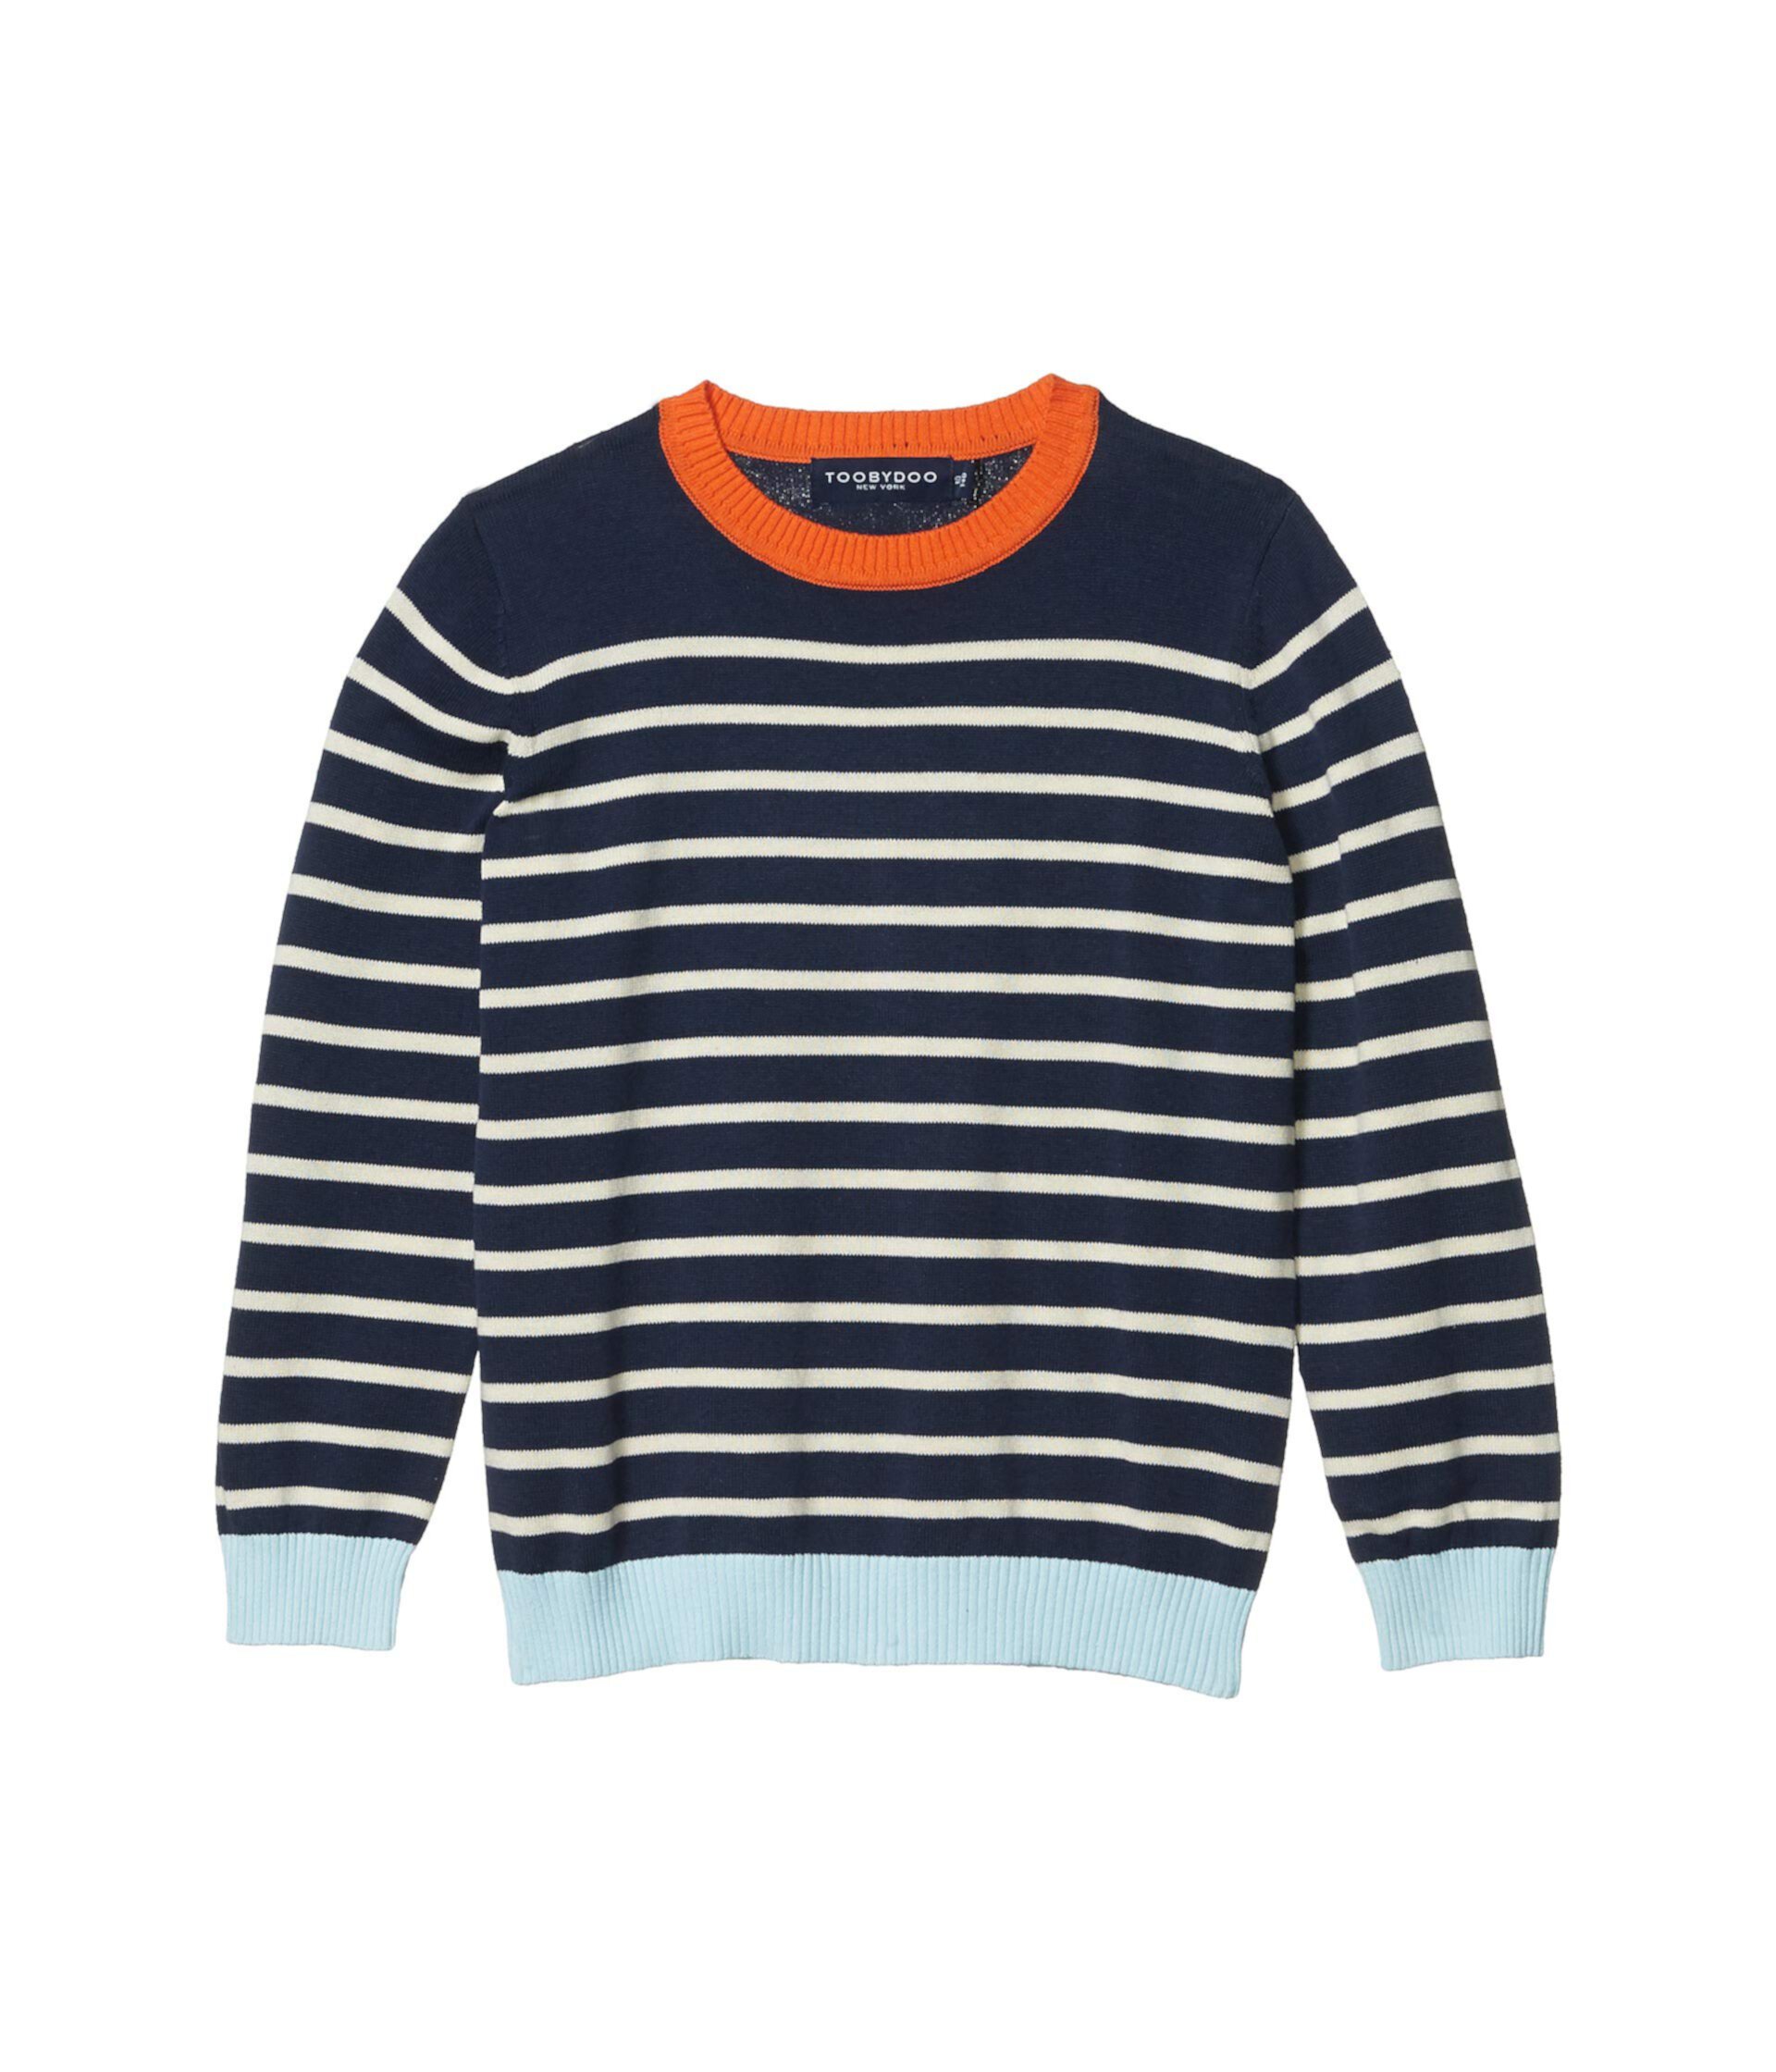 Полосатый свитер (малыши / маленькие дети / дети старшего возраста) Toobydoo